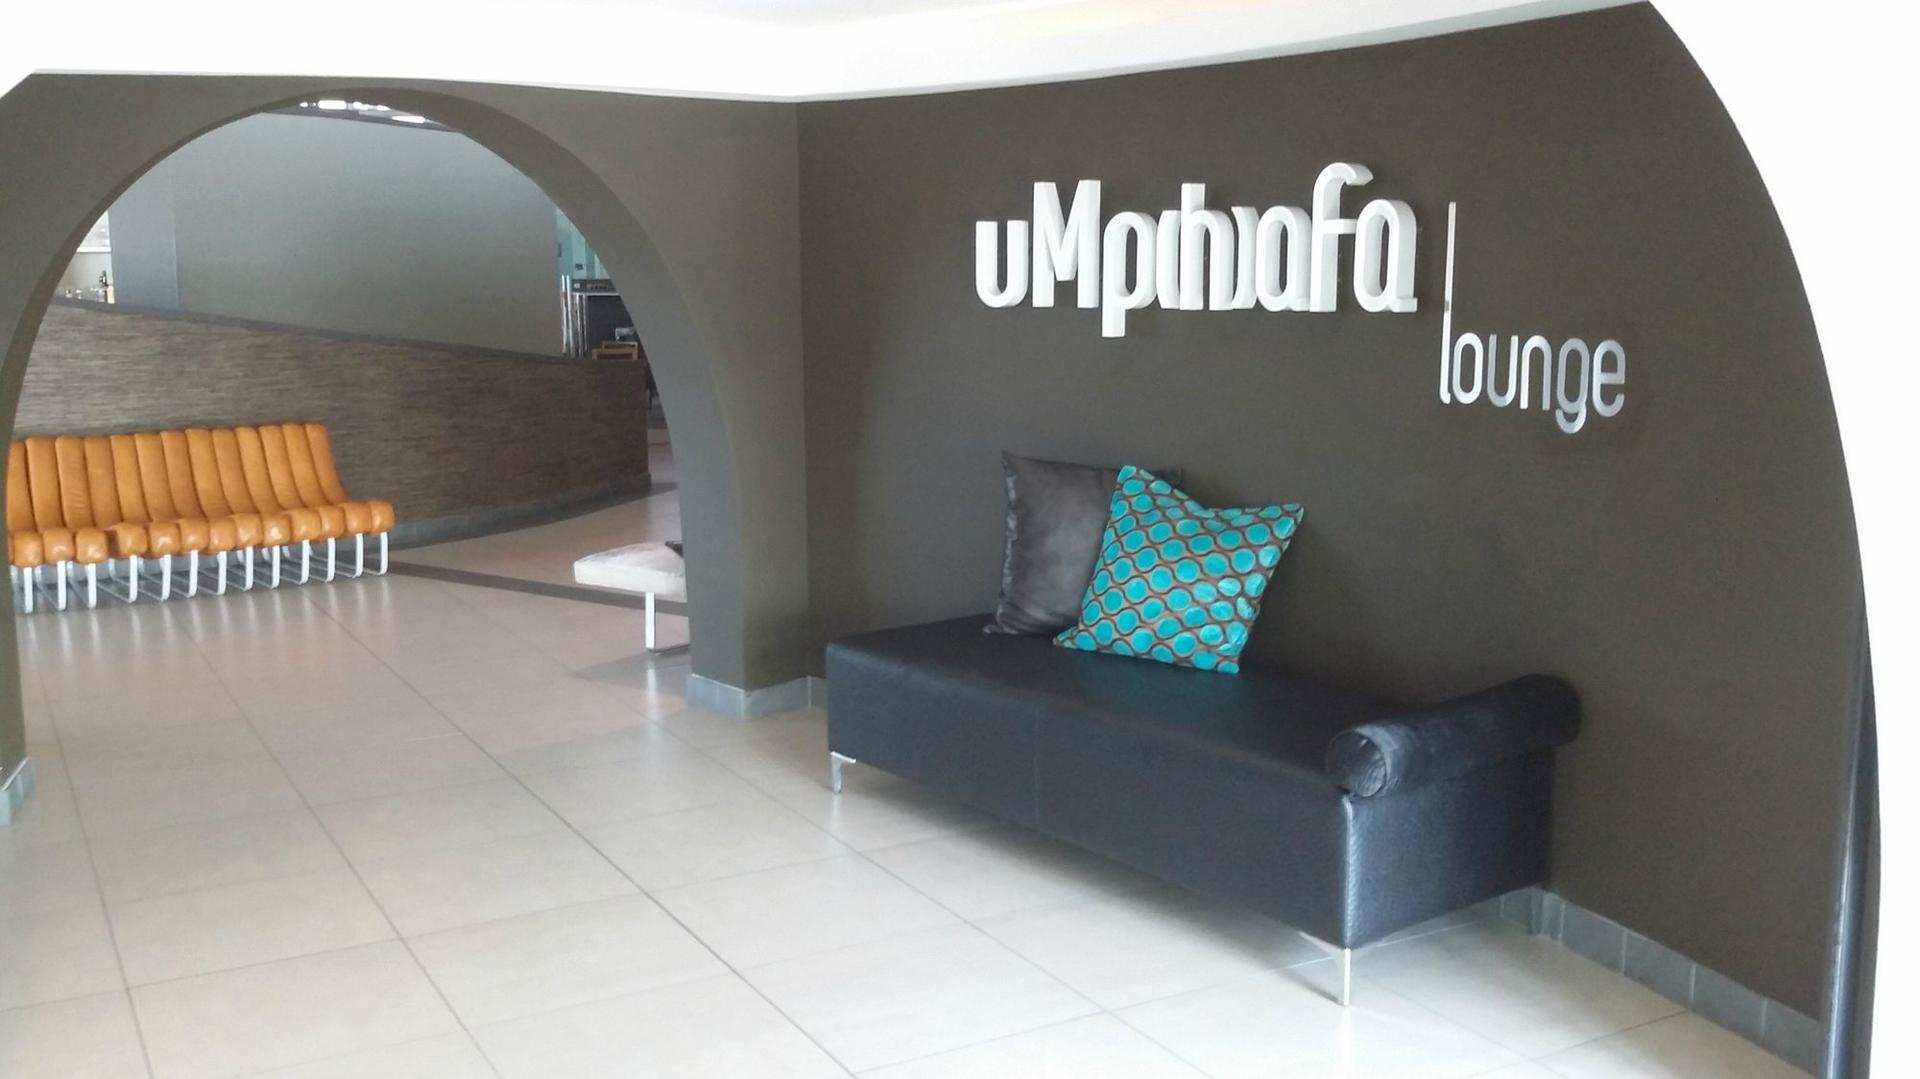 Umphafa Lounge image 10 of 21